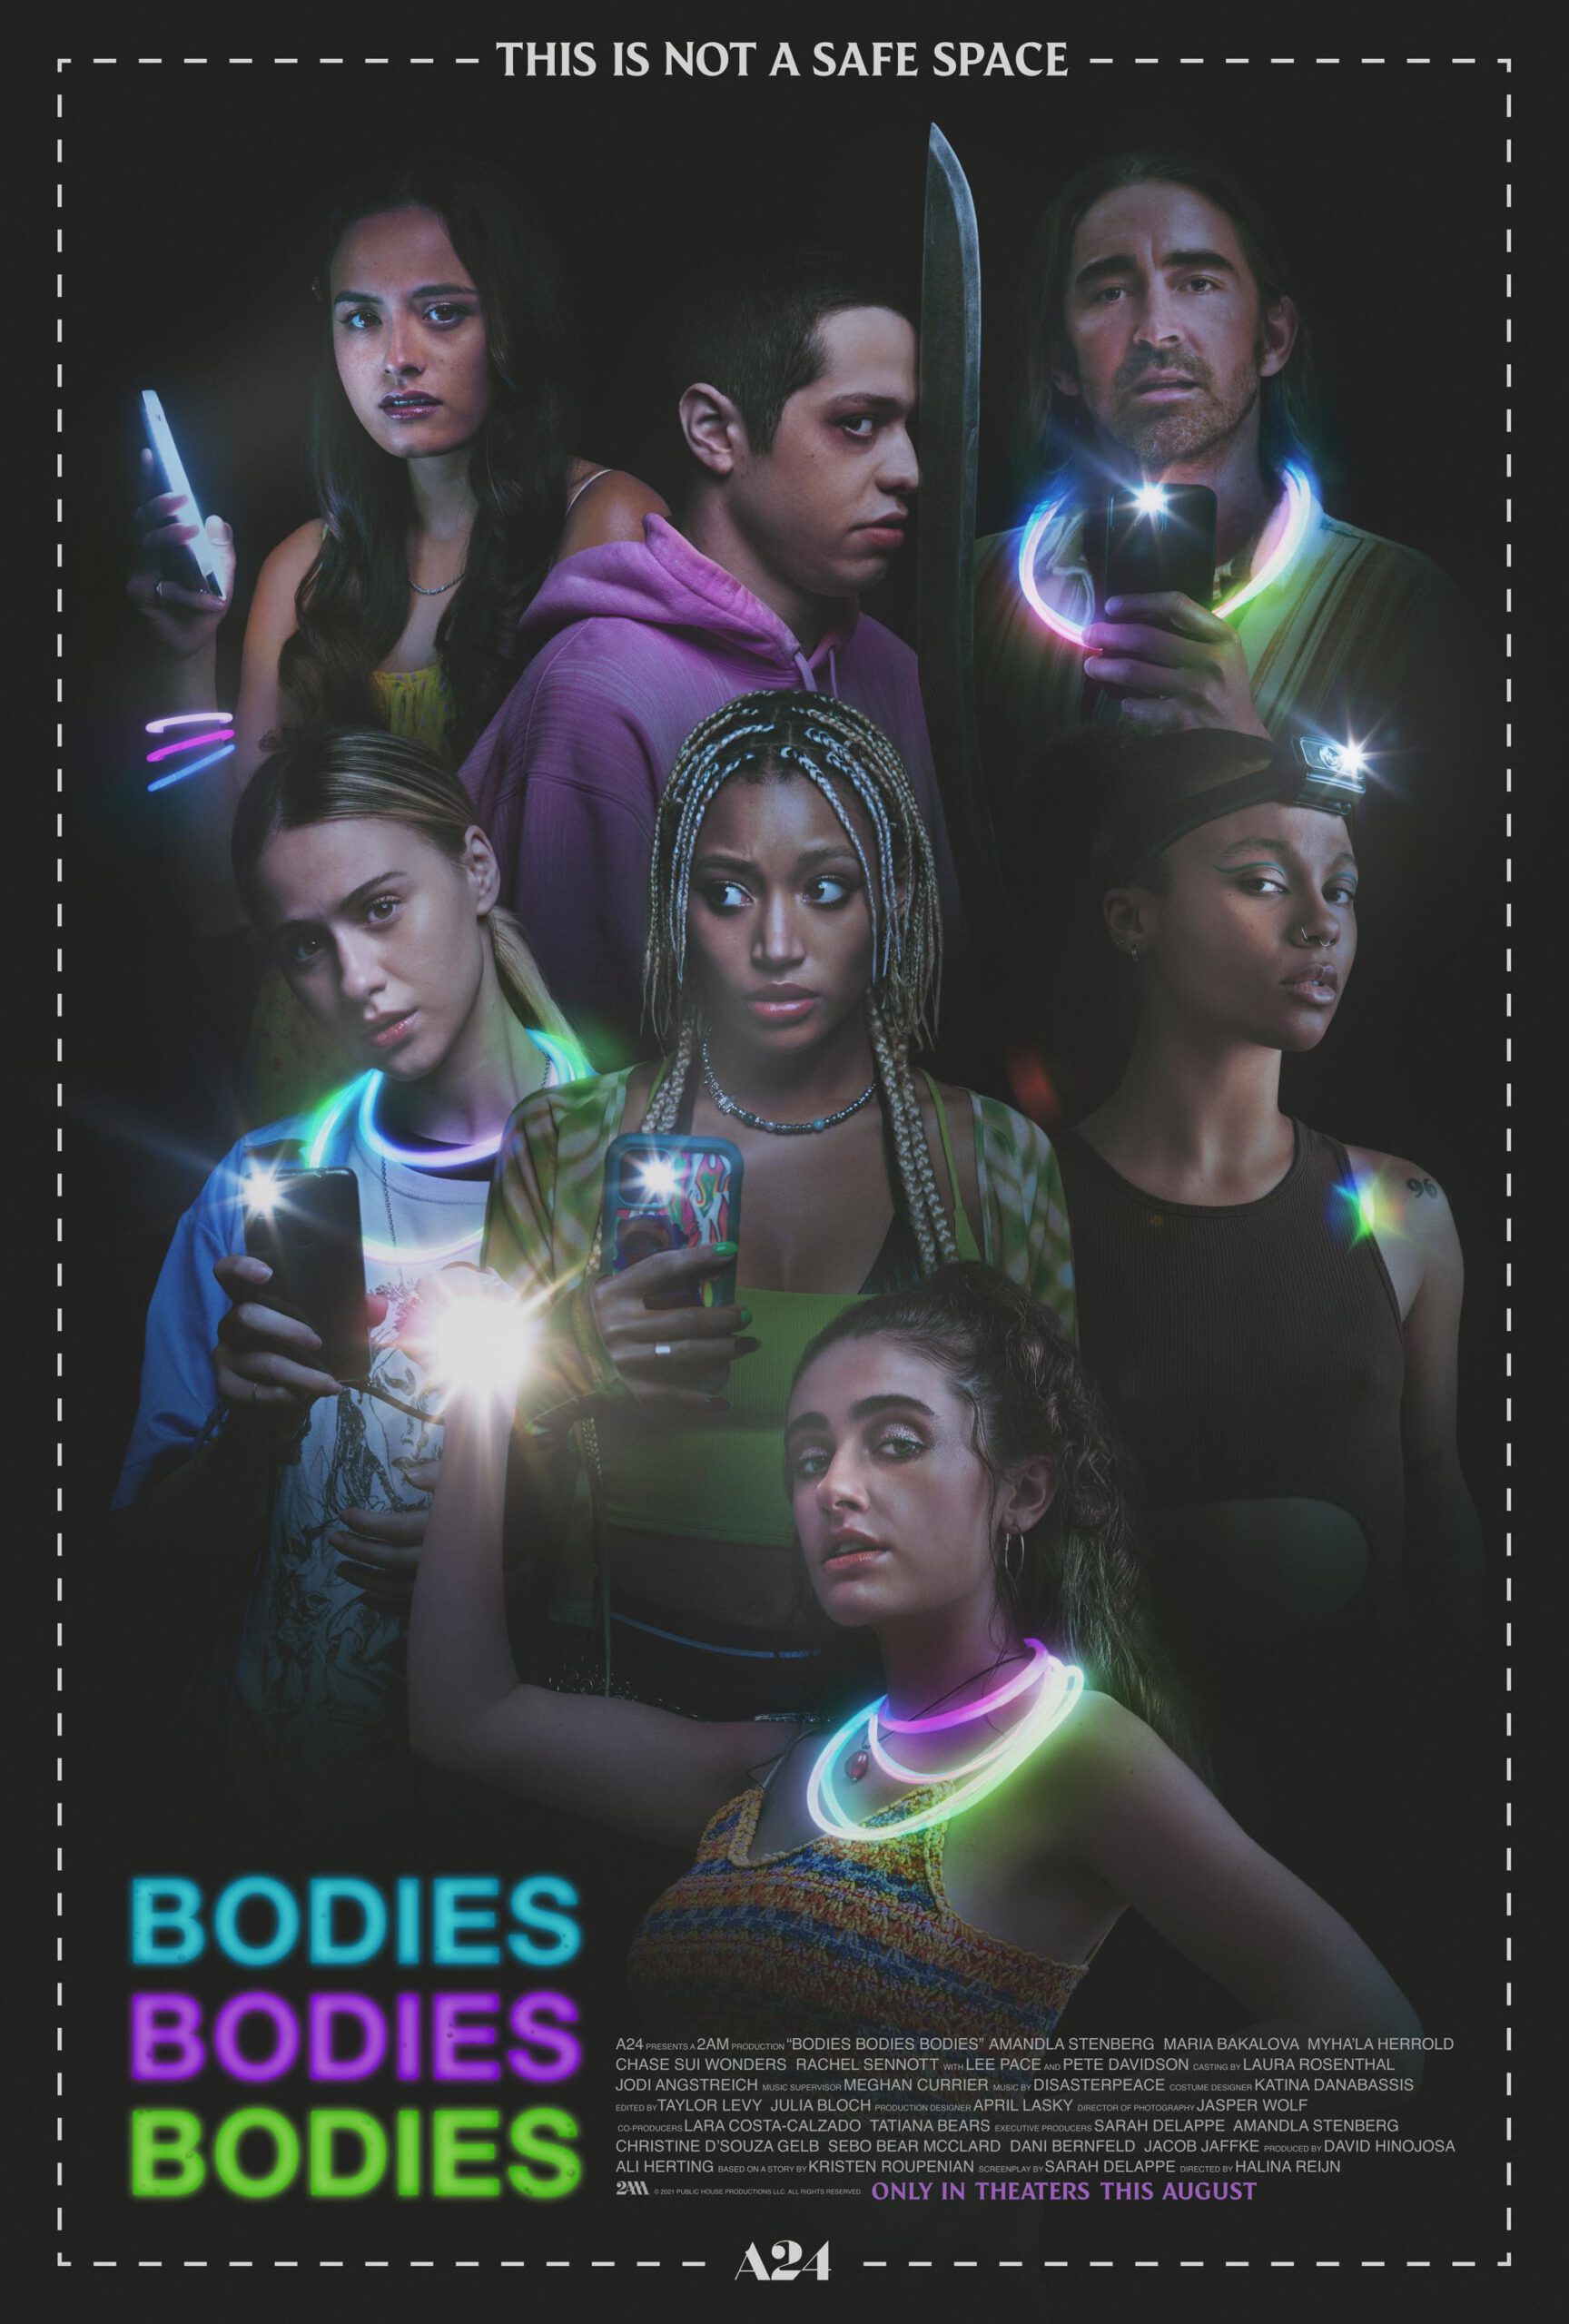 ดูหนังออนไลน์ฟรี Bodies Bodies Bodies (2022) เพื่อนซี้ ปาร์ตี้ หนีตาย (ซับไทย)